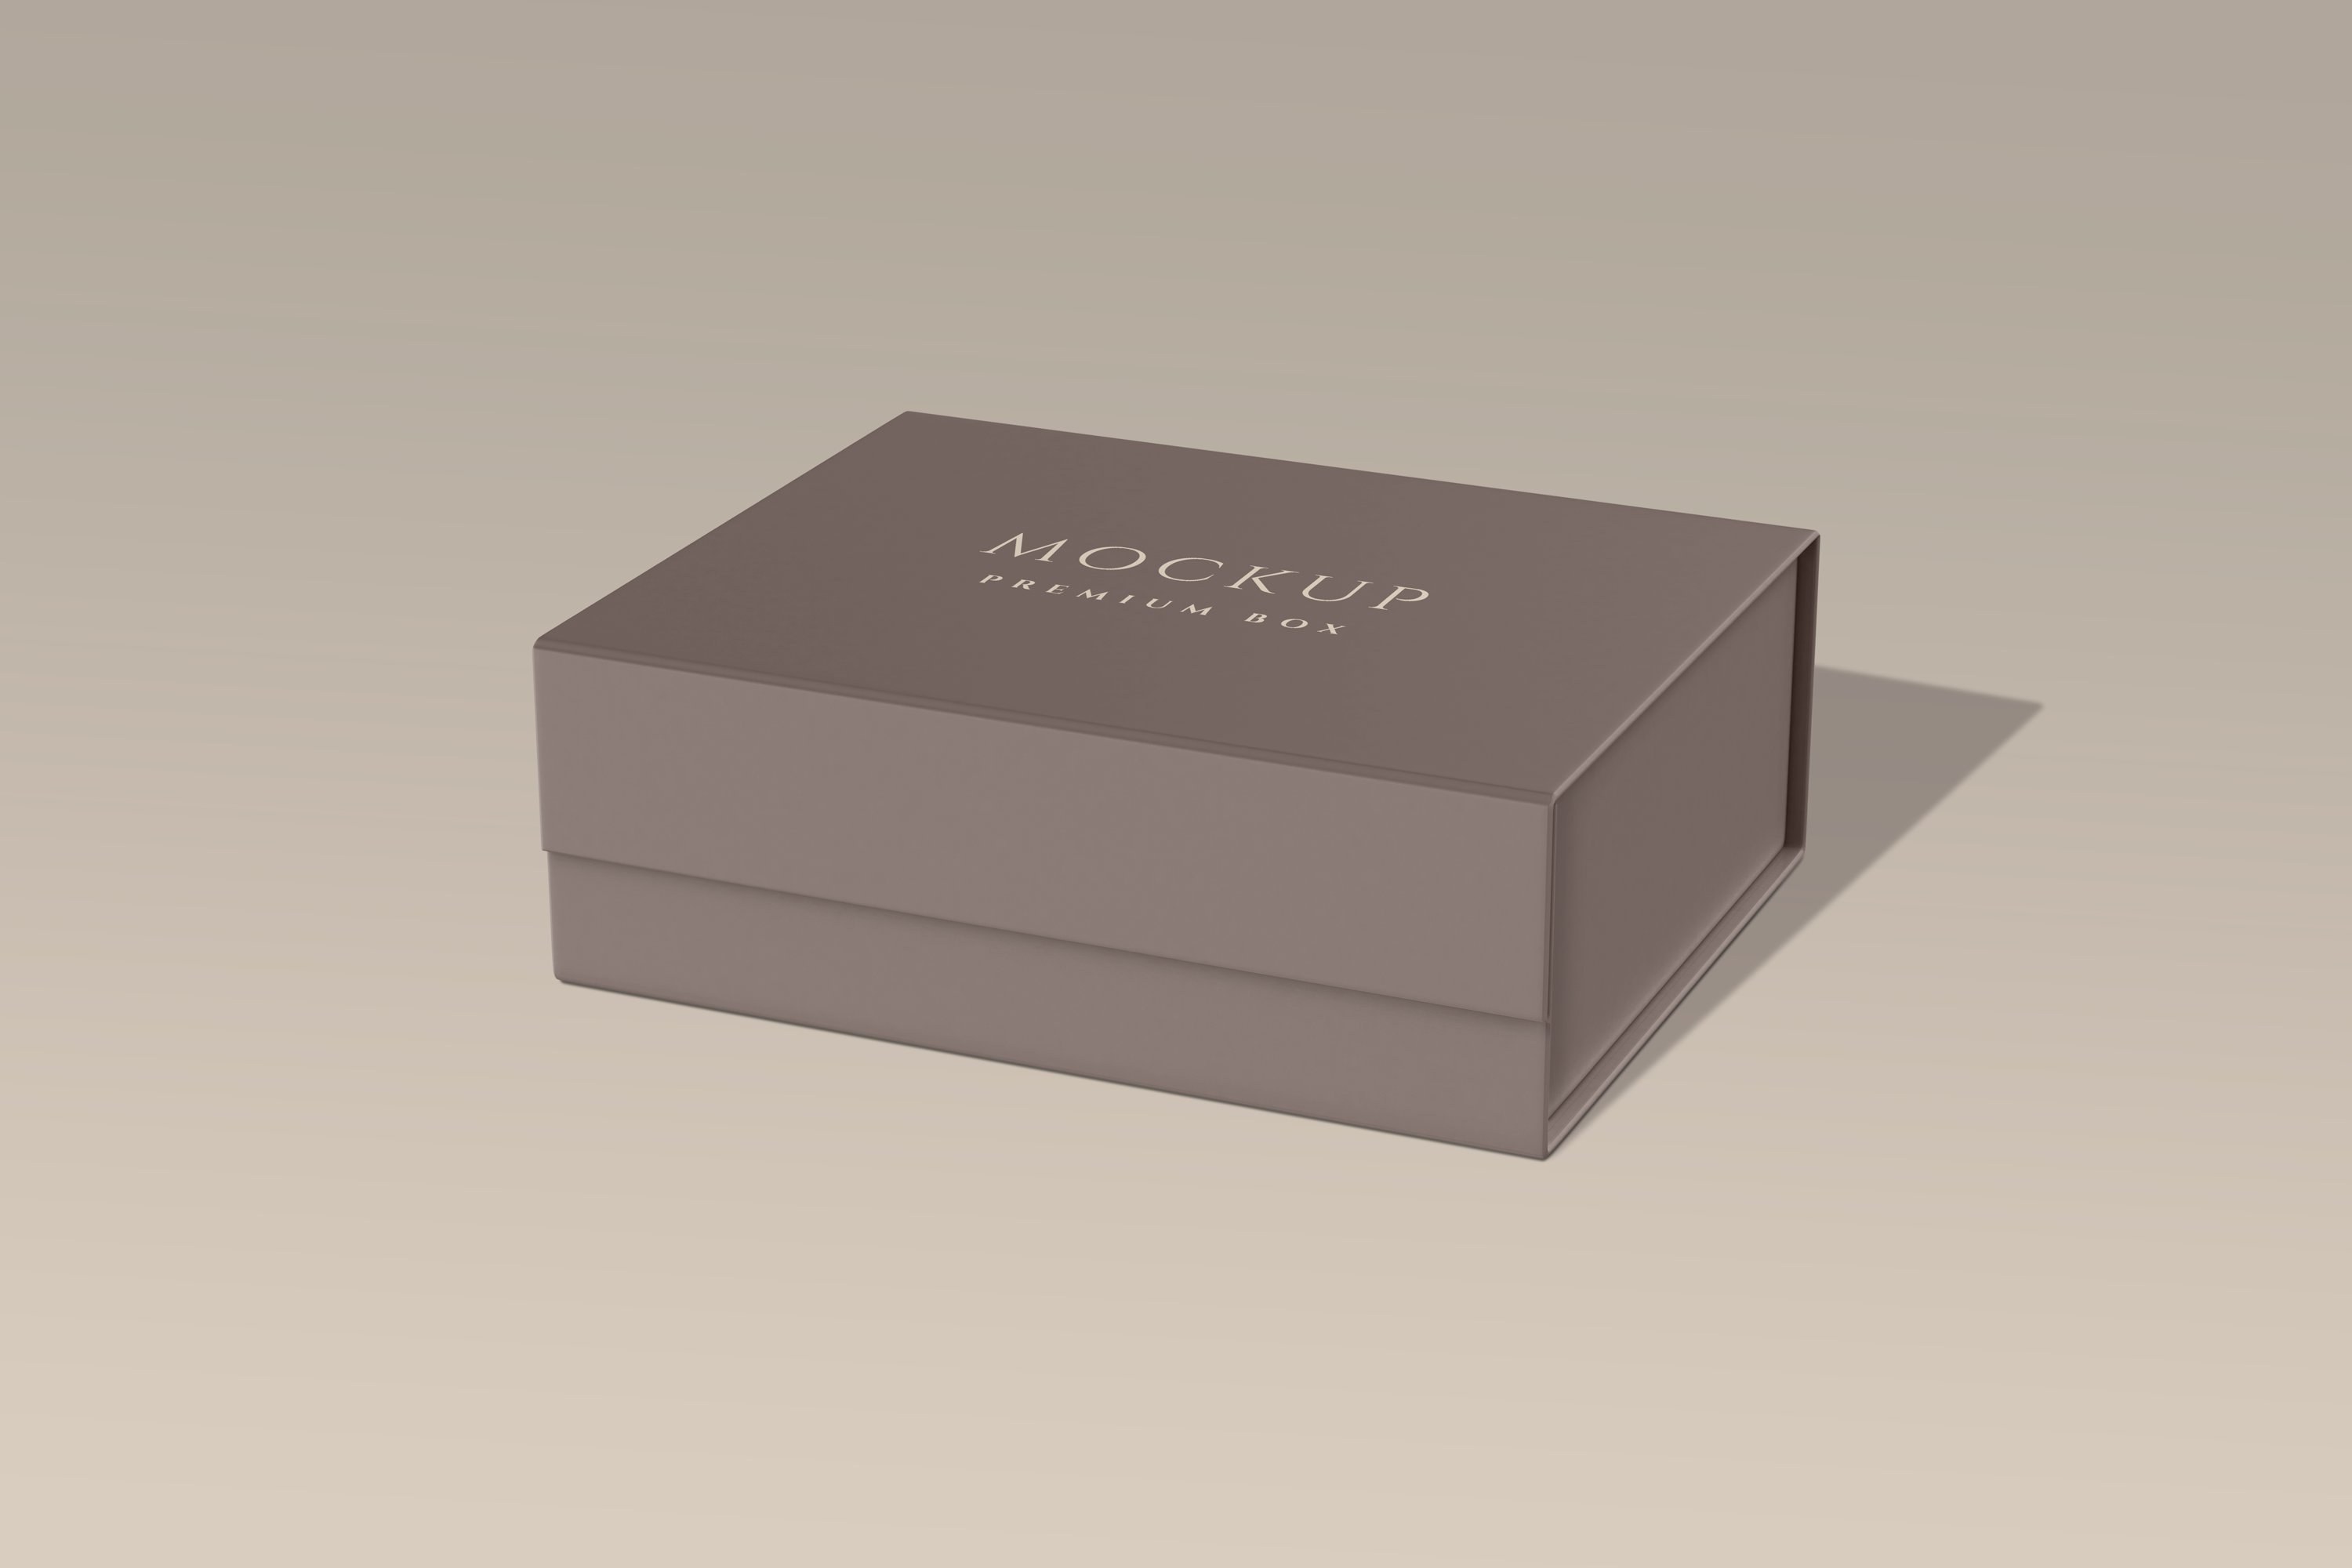 Premium Packaging Box Mockup cover image.